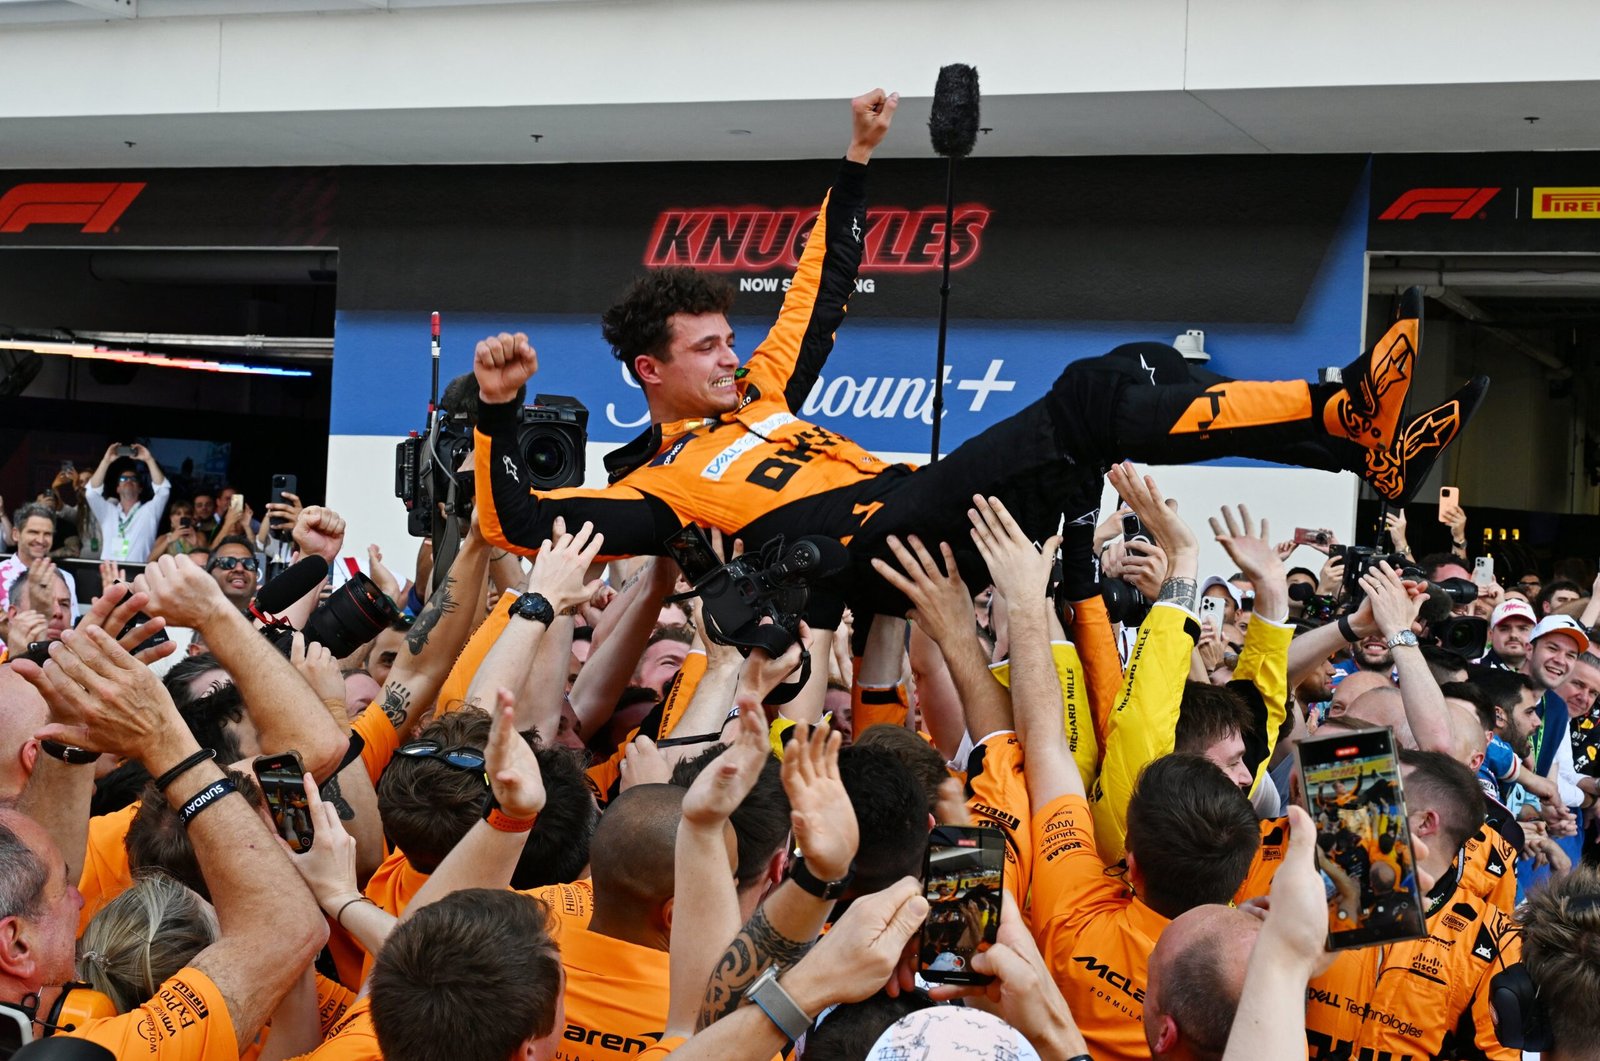 Uma longa espera: a jornada de Lando Norris rumo à primeira vitória na F1